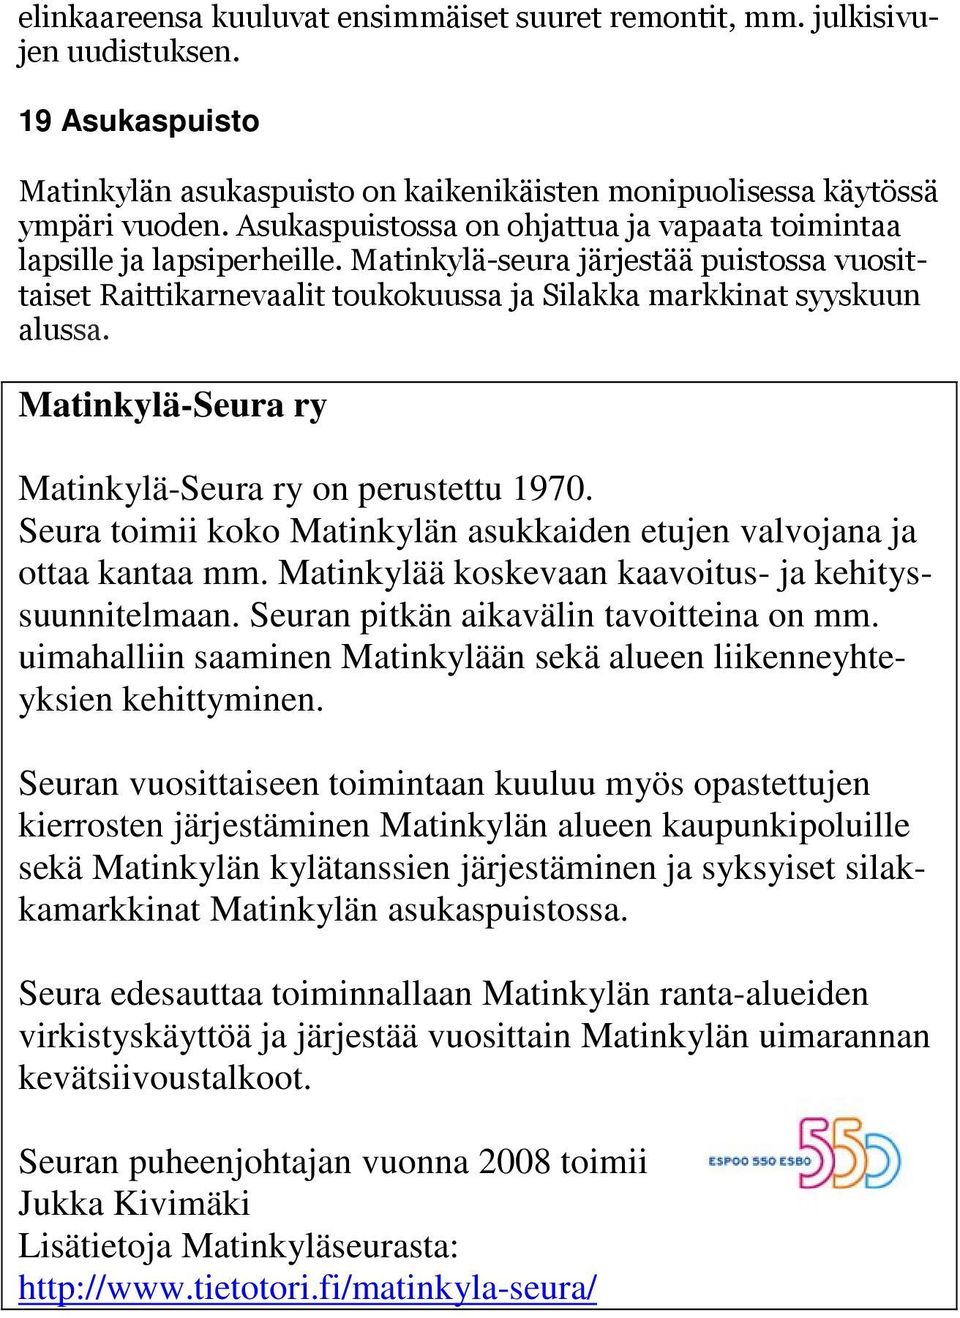 Matinkylä-Seura ry Matinkylä-Seura ry on perustettu 1970. Seura toimii koko Matinkylän asukkaiden etujen valvojana ja ottaa kantaa mm. Matinkylää koskevaan kaavoitus- ja kehityssuunnitelmaan.